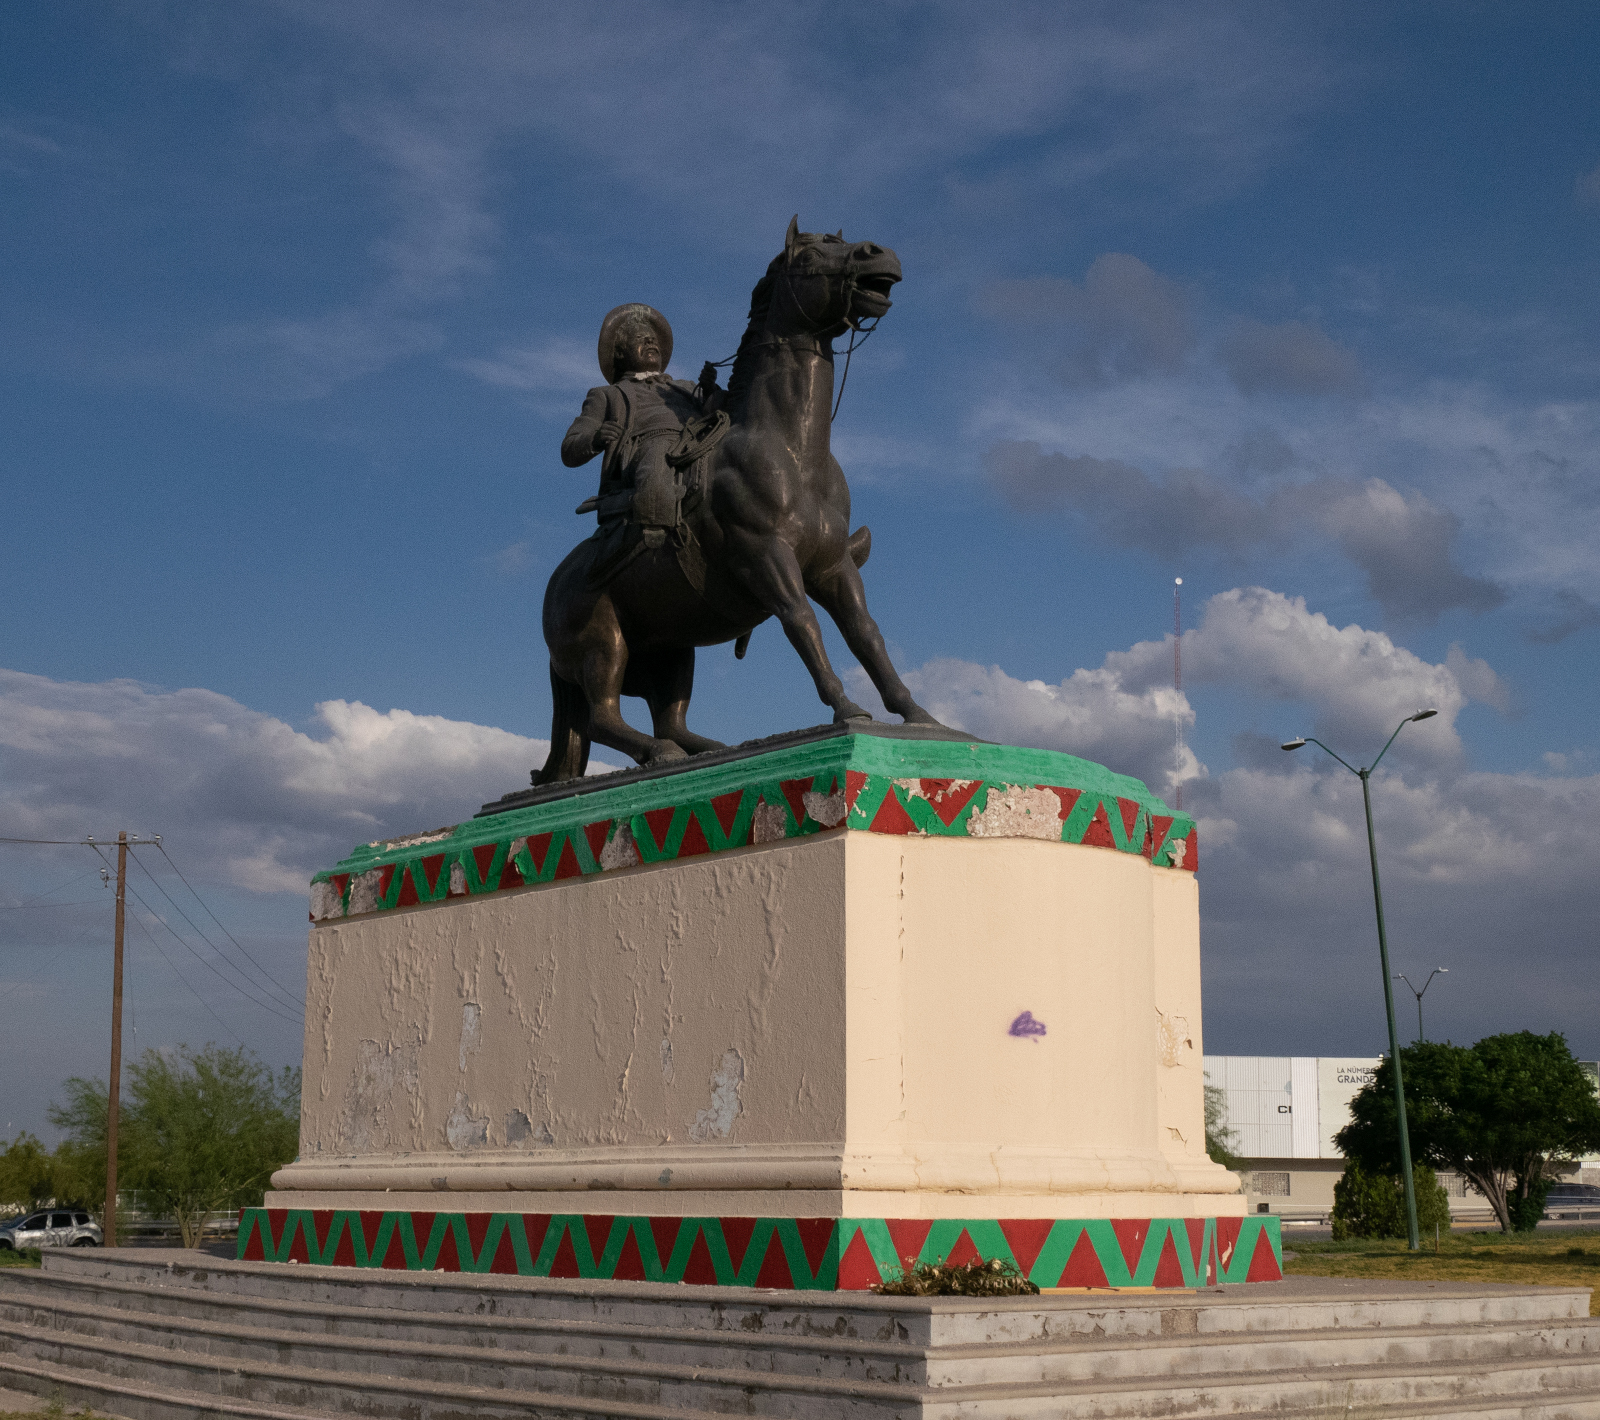 Heroic equestrian statue of Pancho Villa in Ciudad Juárez.